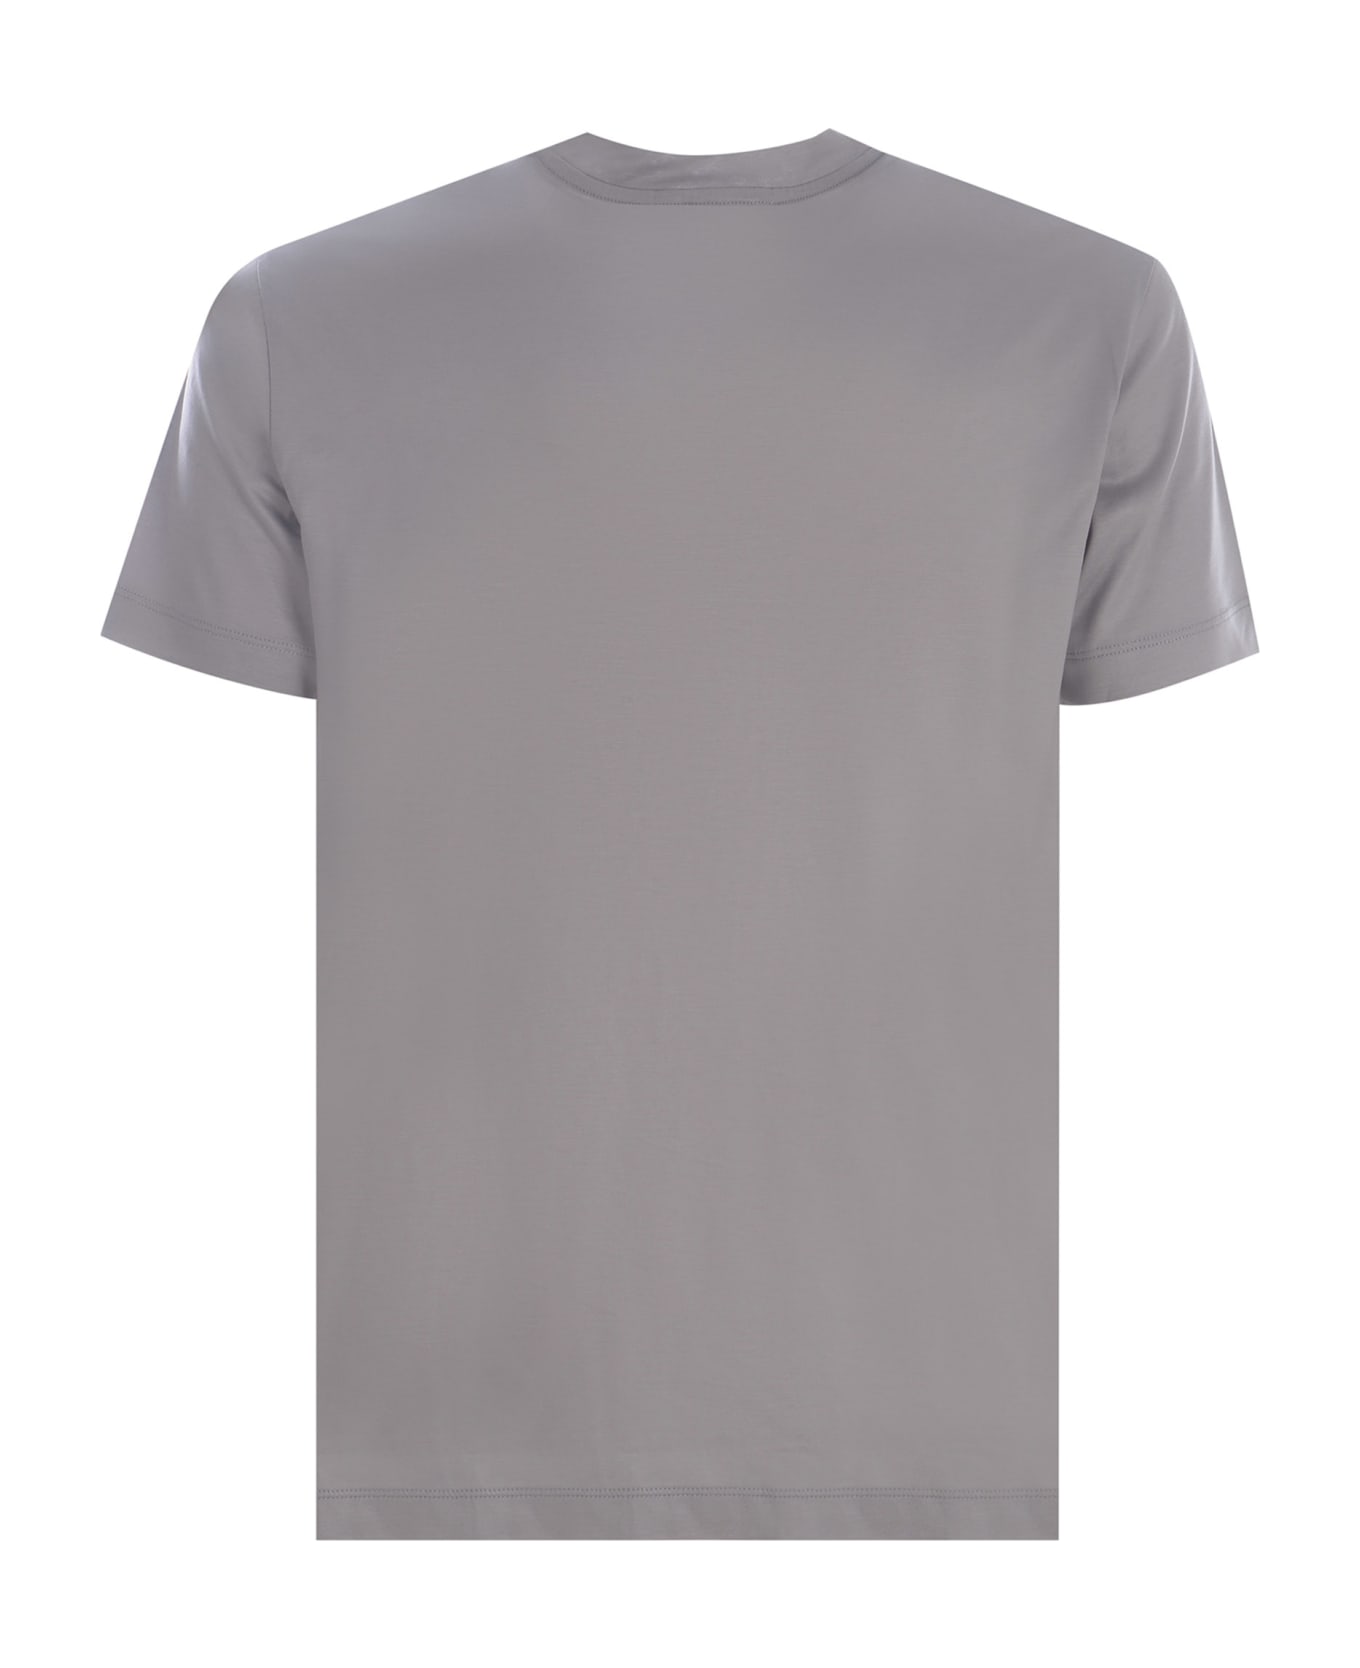 Emporio Armani T-shirt Emporio Armani Made Of Cotton - Grigio chiaro シャツ